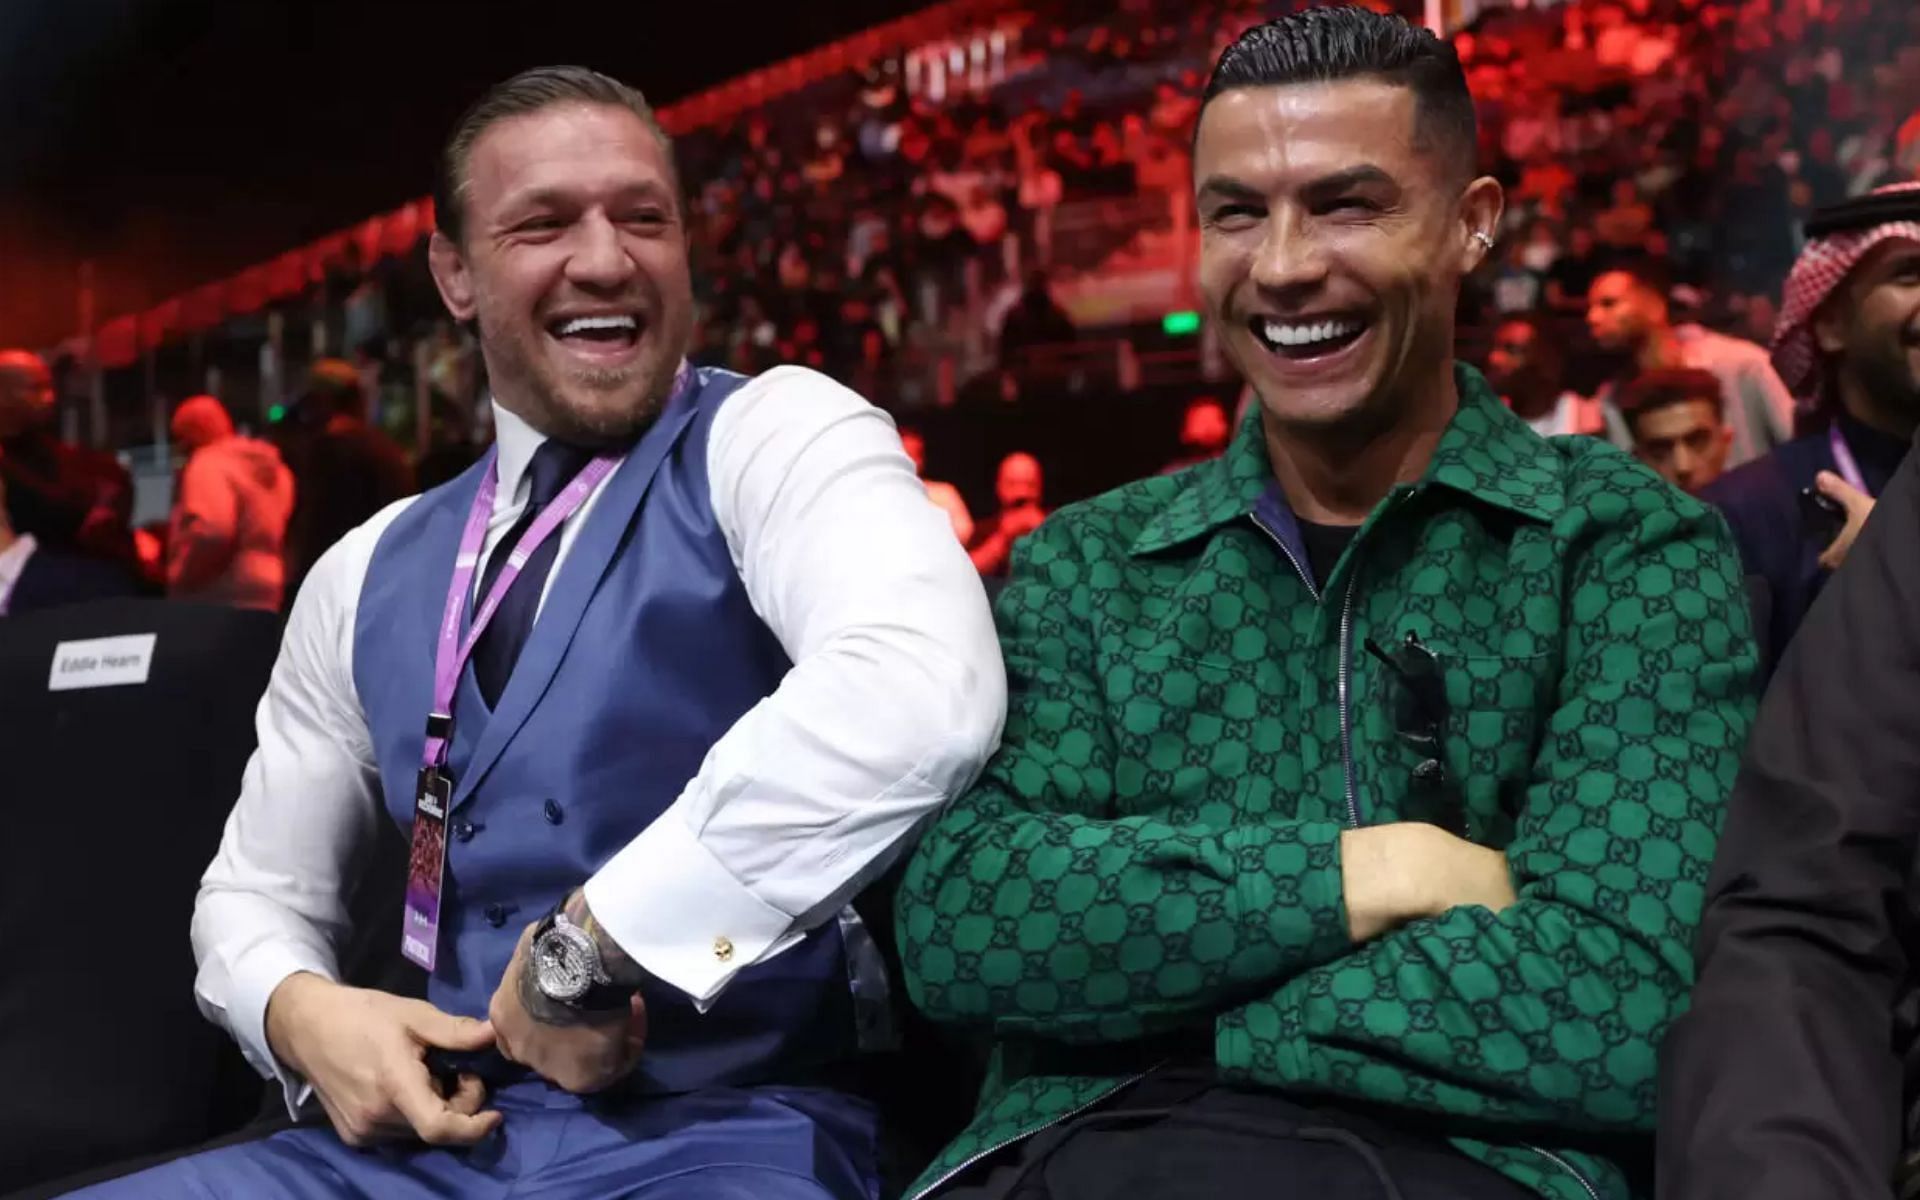 Conor McGregor and Cristiano Ronaldo in Saudi Arabia. (via Instagram @thenotoriousmma)